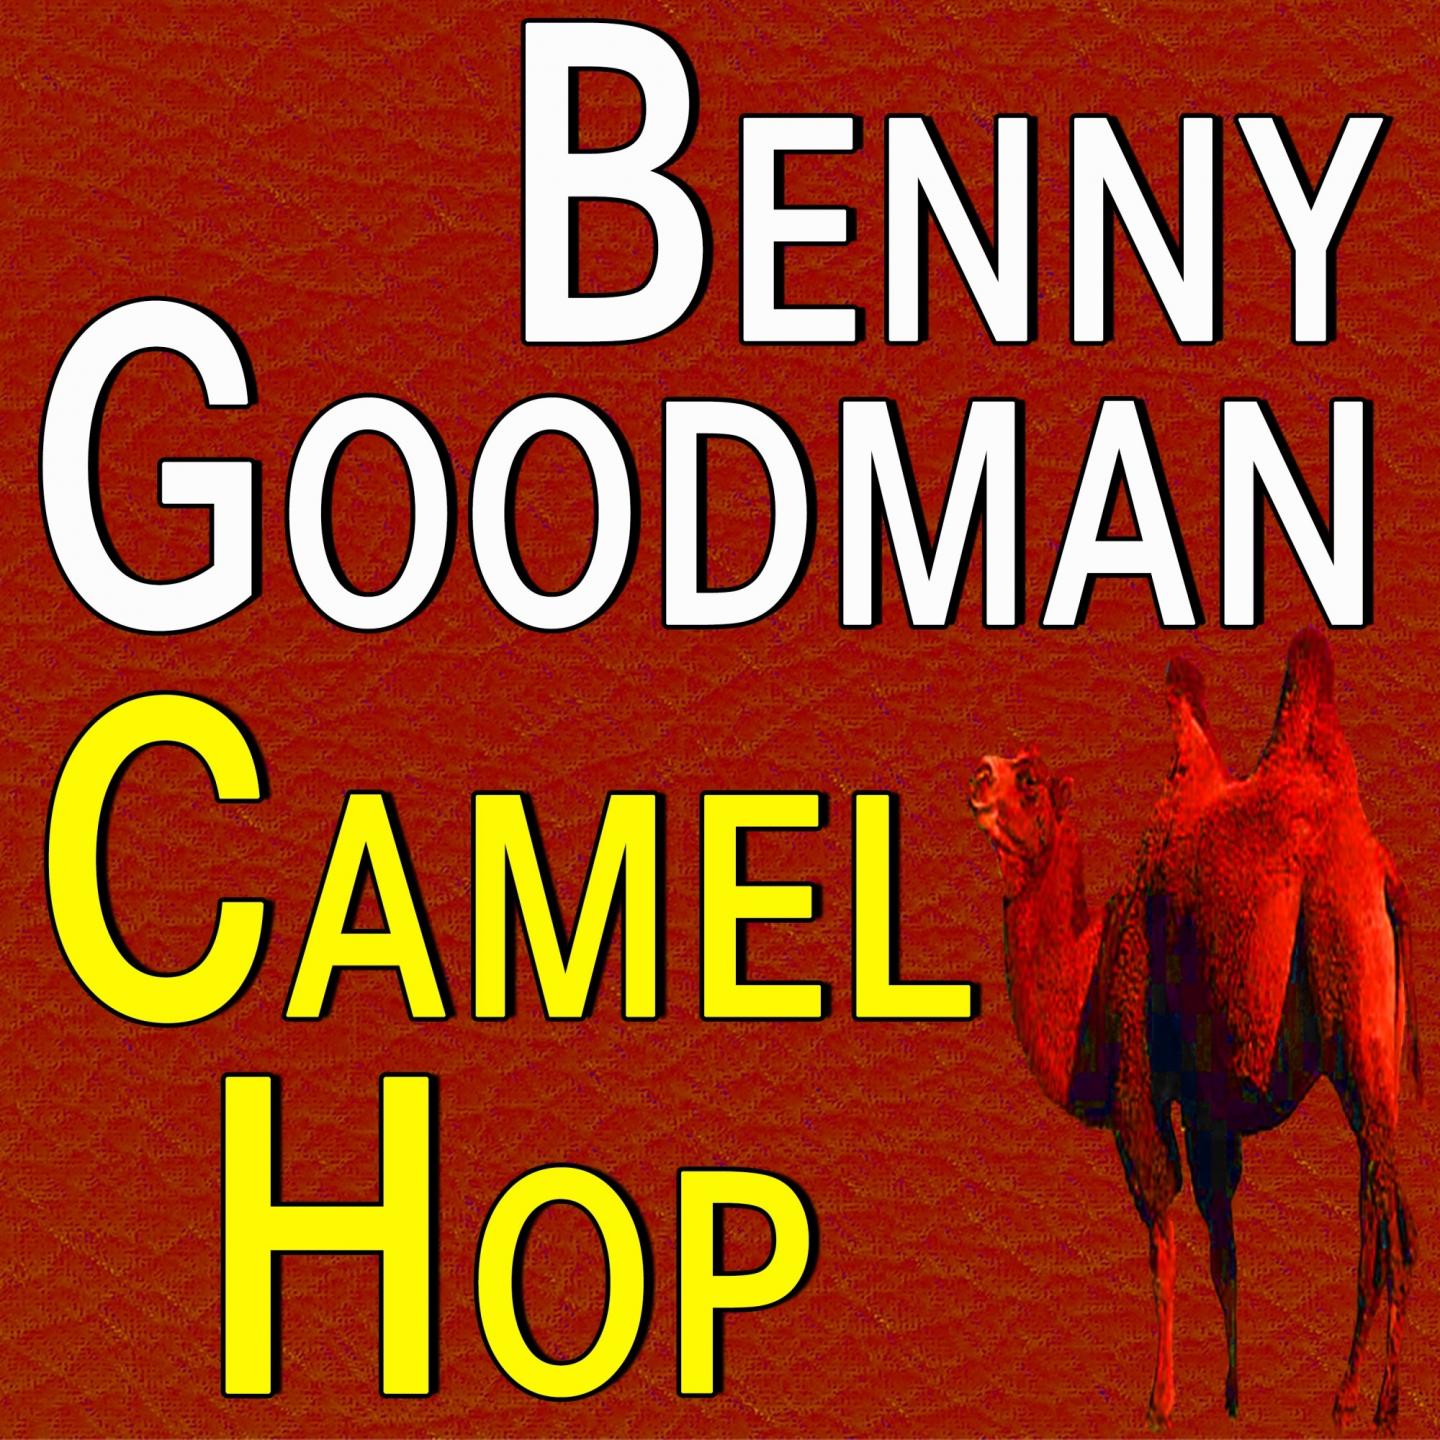 Benny Goodman Camel Hop